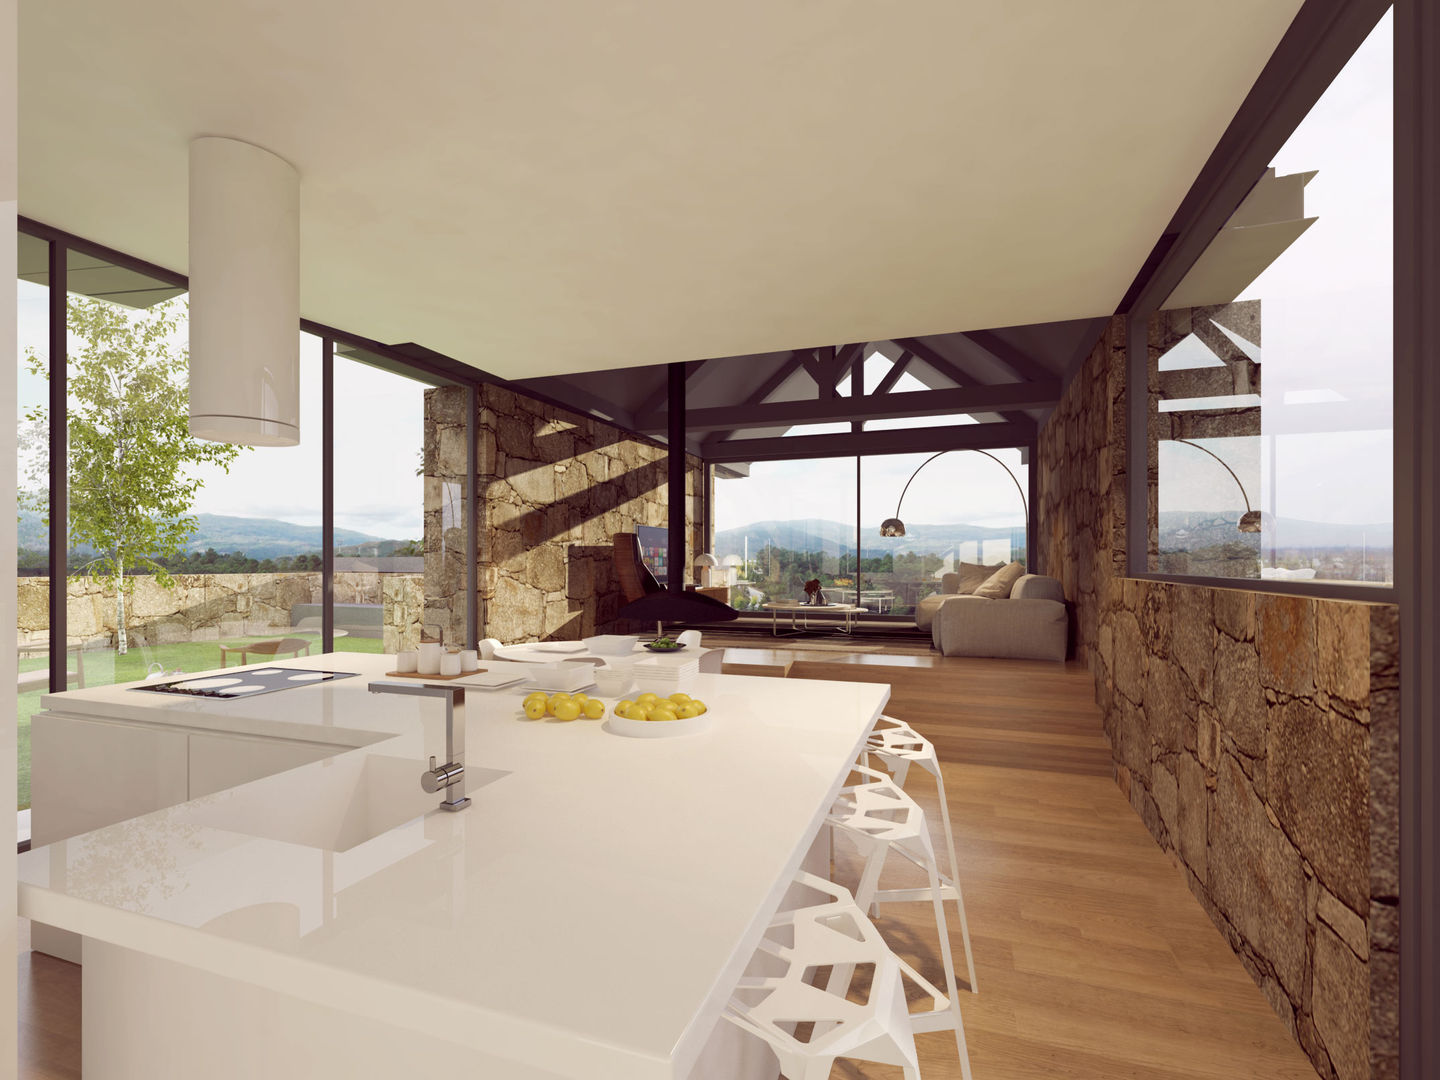 Recuperação de uma habitação rural em Melgaço, Davide Domingues Arquitecto Davide Domingues Arquitecto Cocinas de estilo rústico